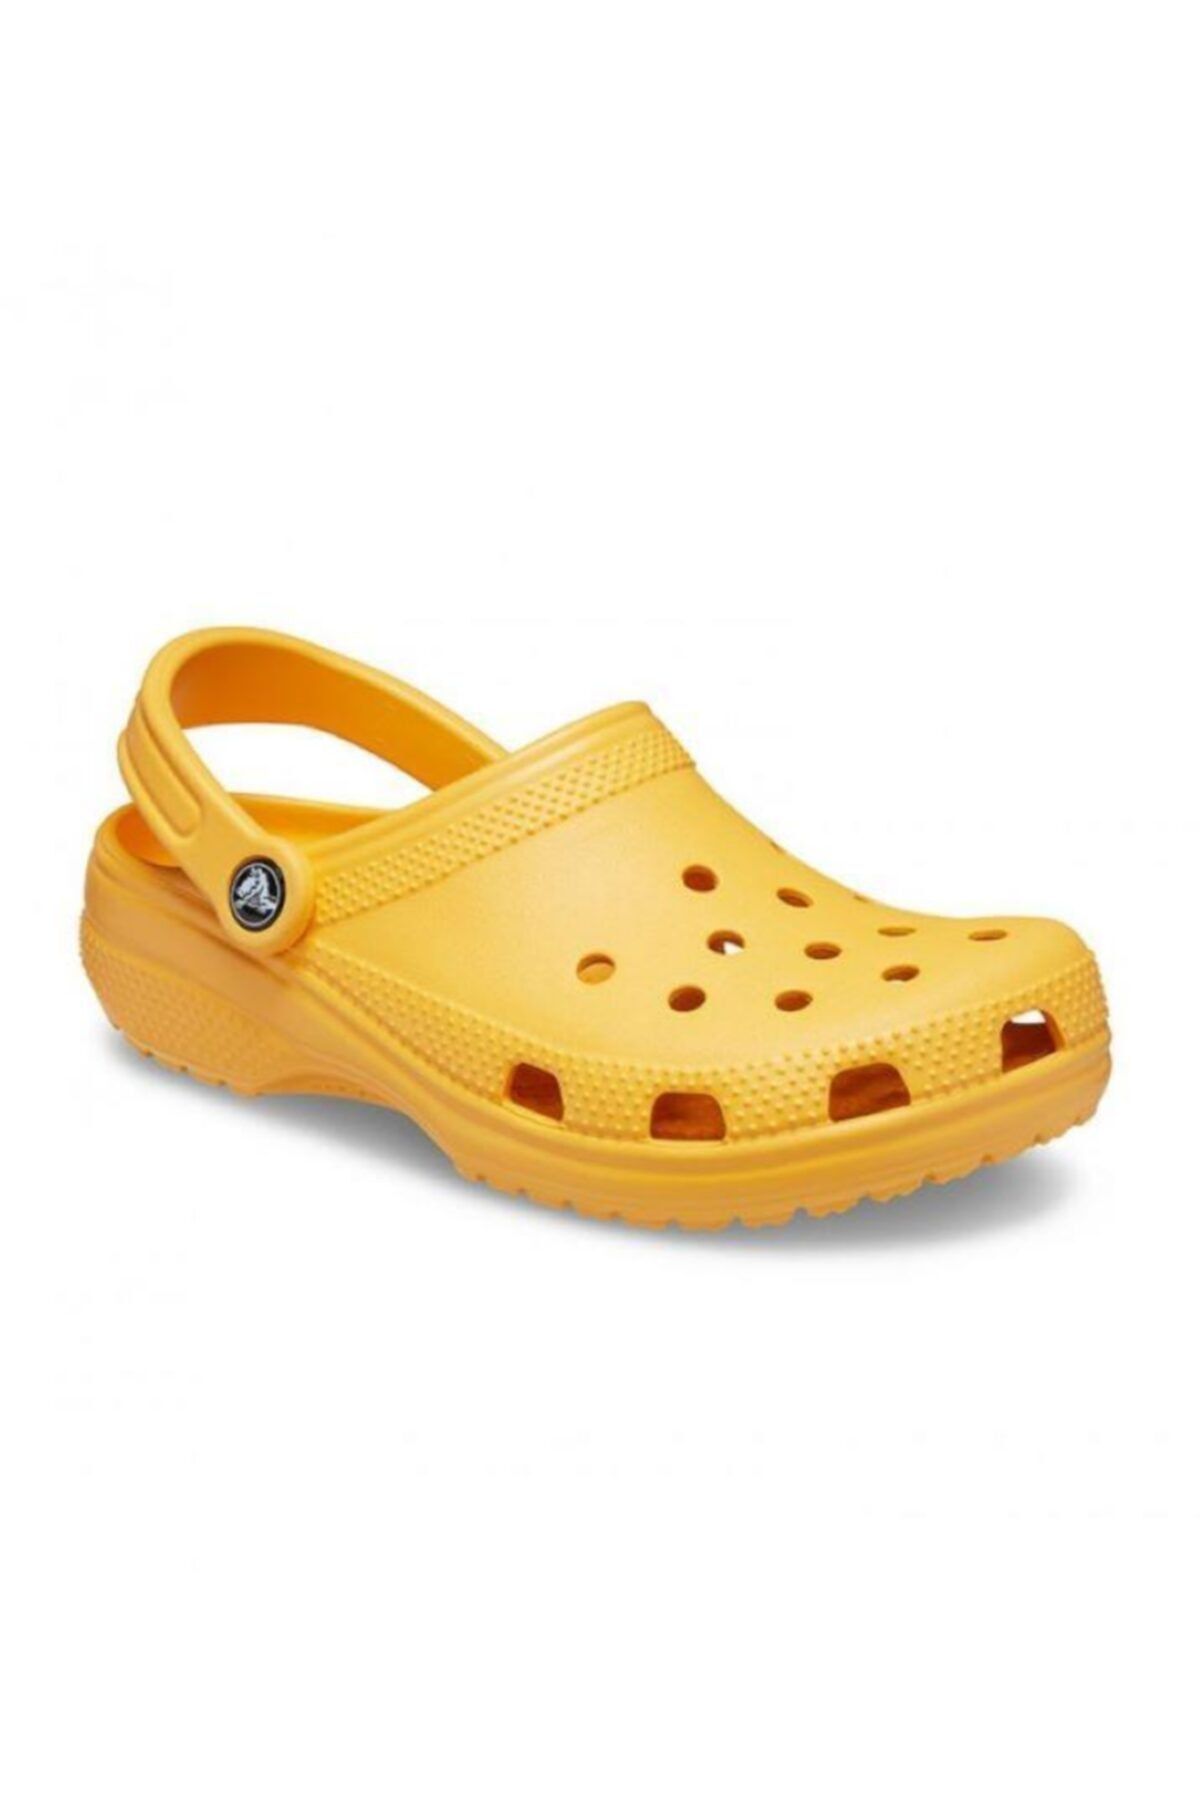 Crocs Classic Clog Terlik 10001-837